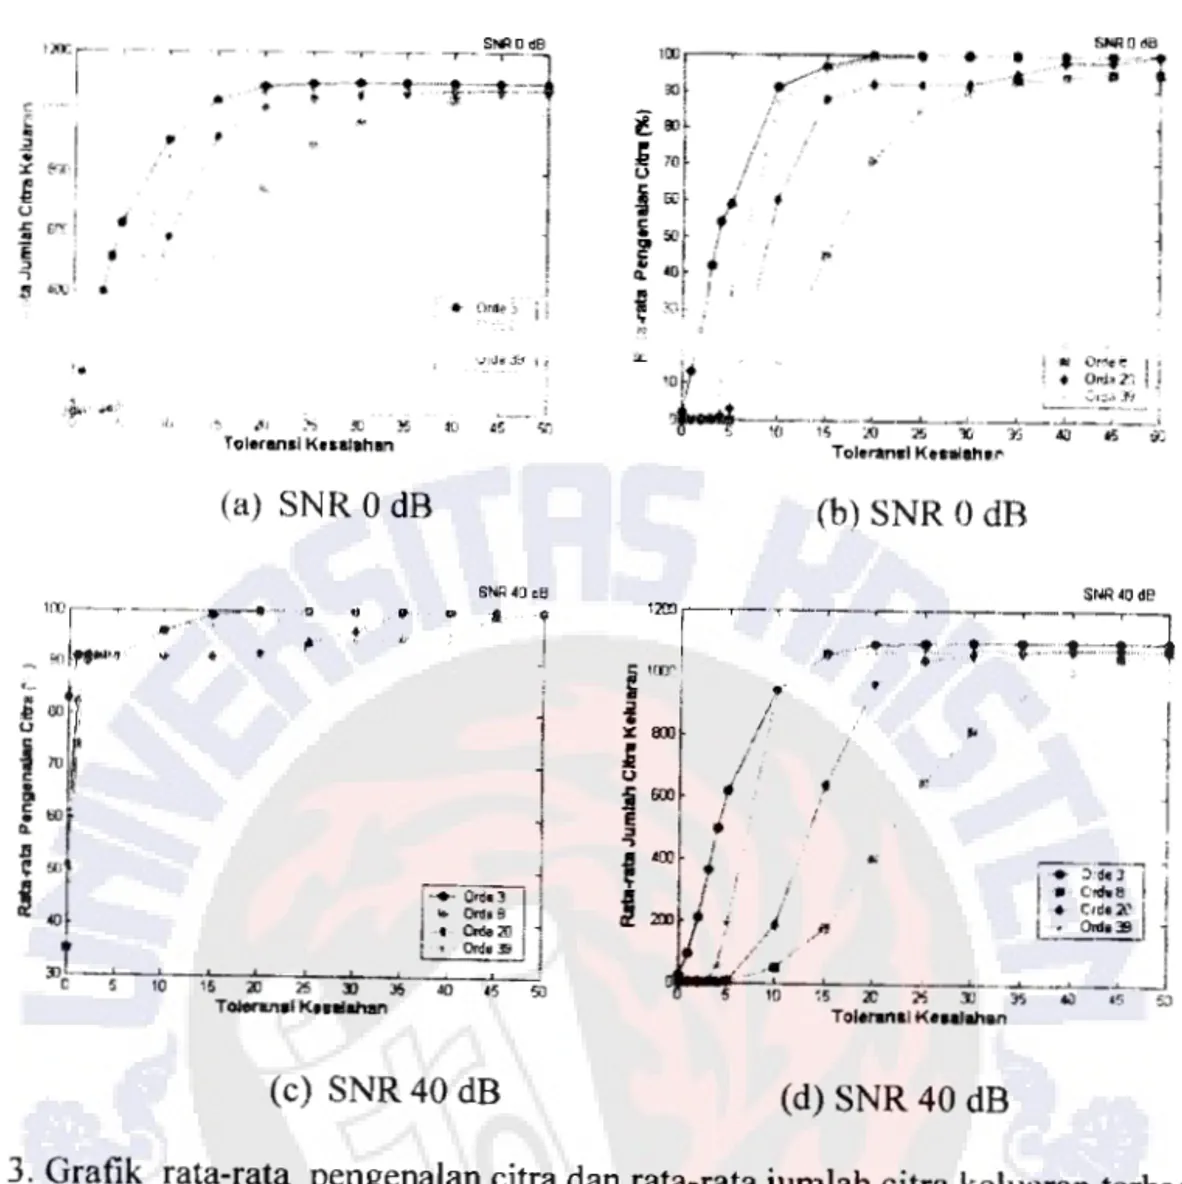 Gambar  3.  Grafik  rata-rata  pengenalan citra dan rata-ratajumlah citra keluaran terhadap  toleransi kesalahan untuk  SNR 0 dB  dan SNR 40 dB 